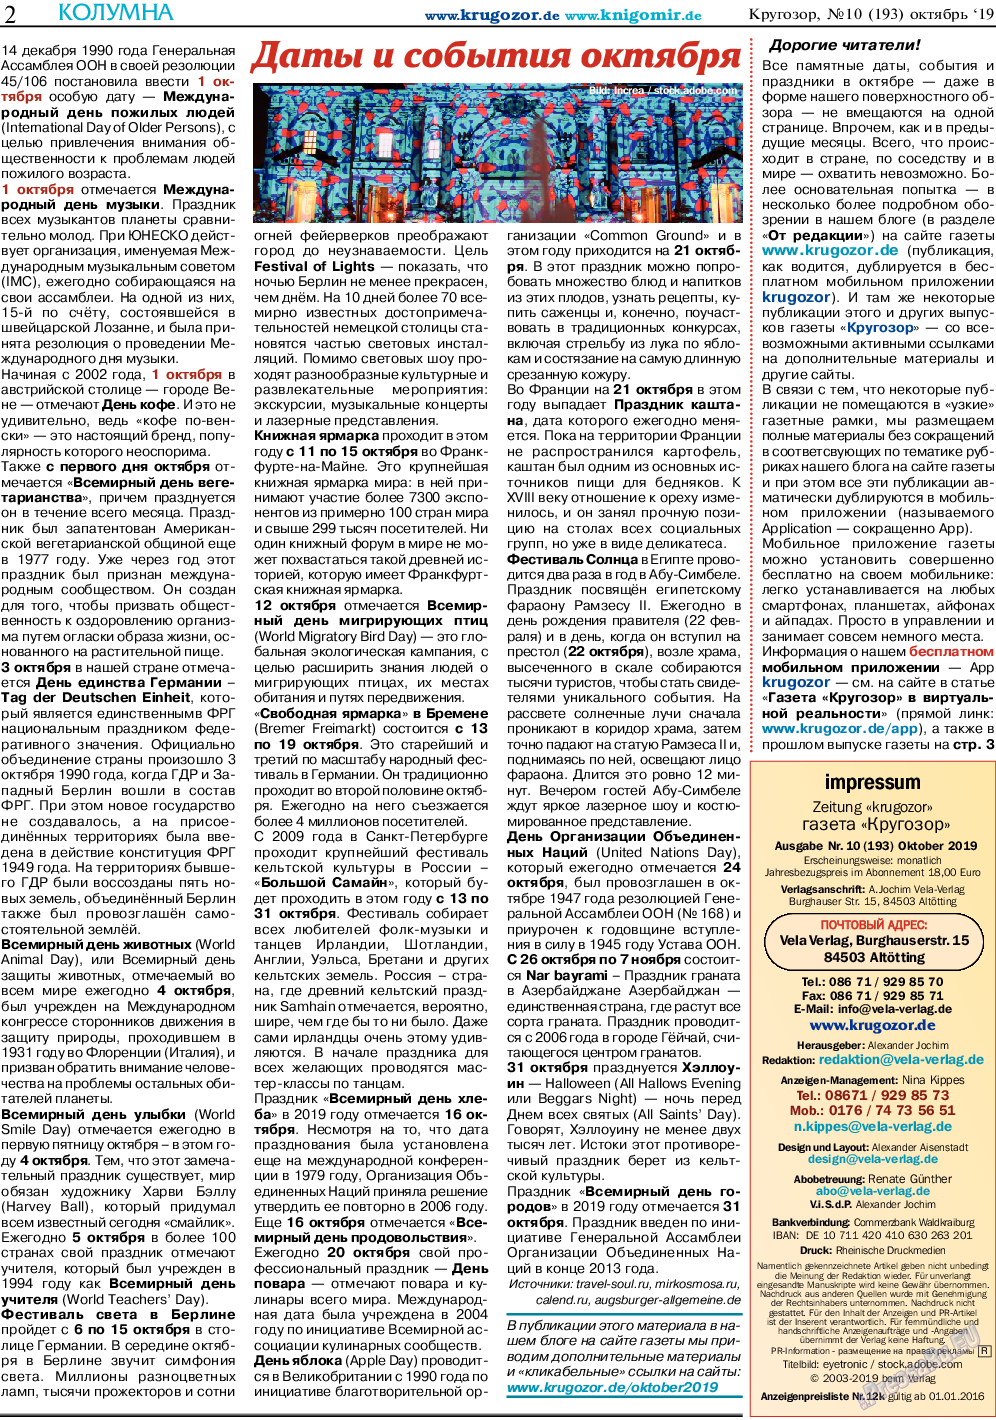 Кругозор, газета. 2019 №10 стр.2